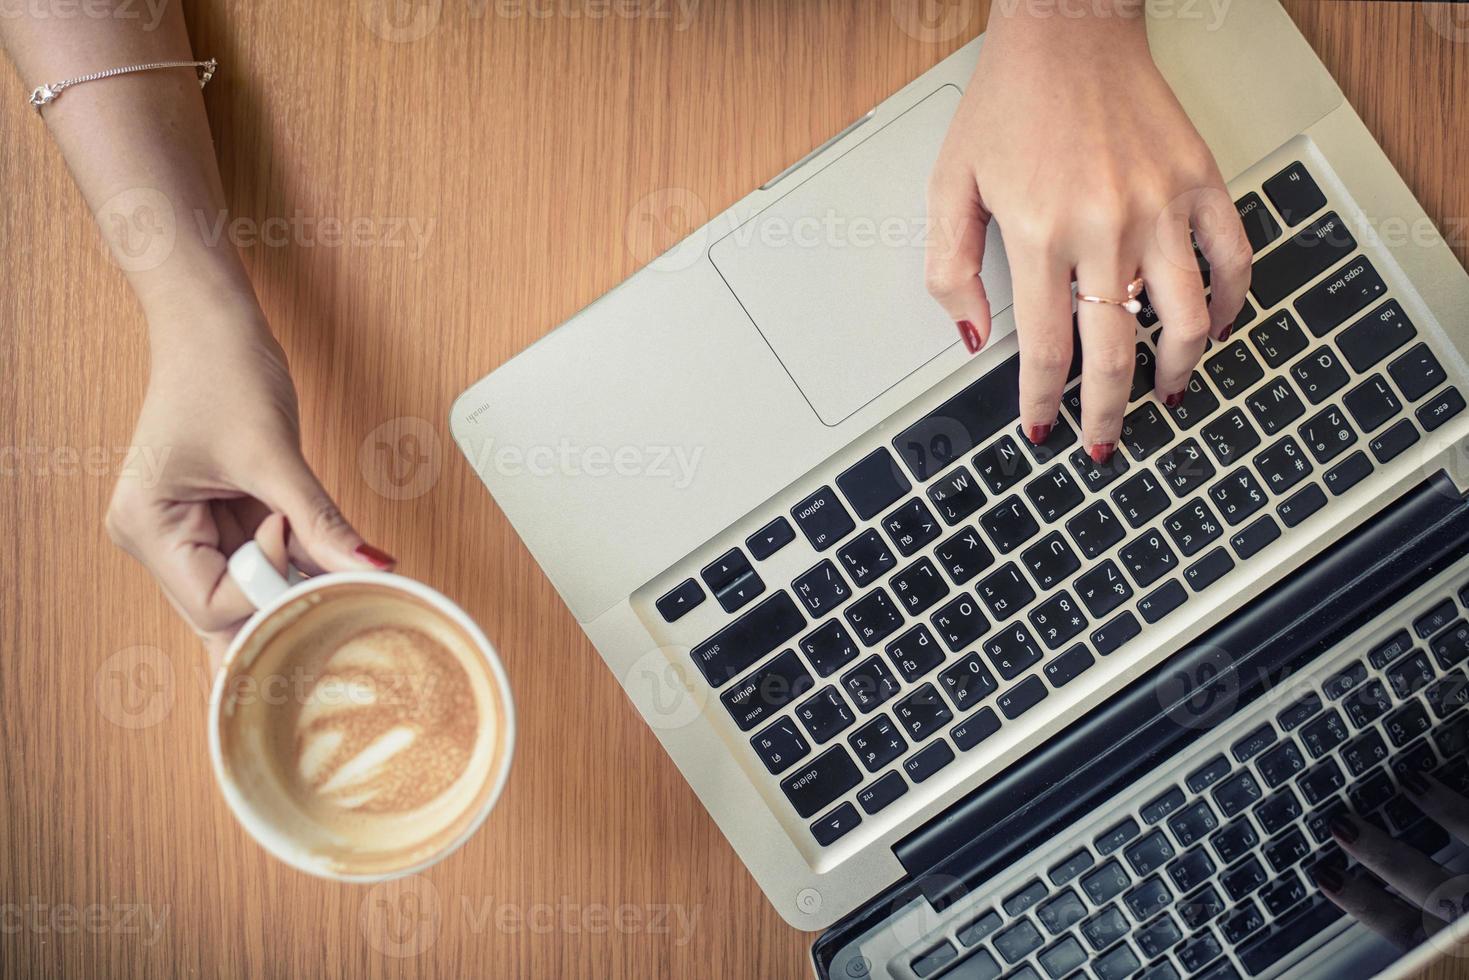 bärbar dator och kaffe kopp i flickans händer Sammanträde på en trä- bakgrund foto